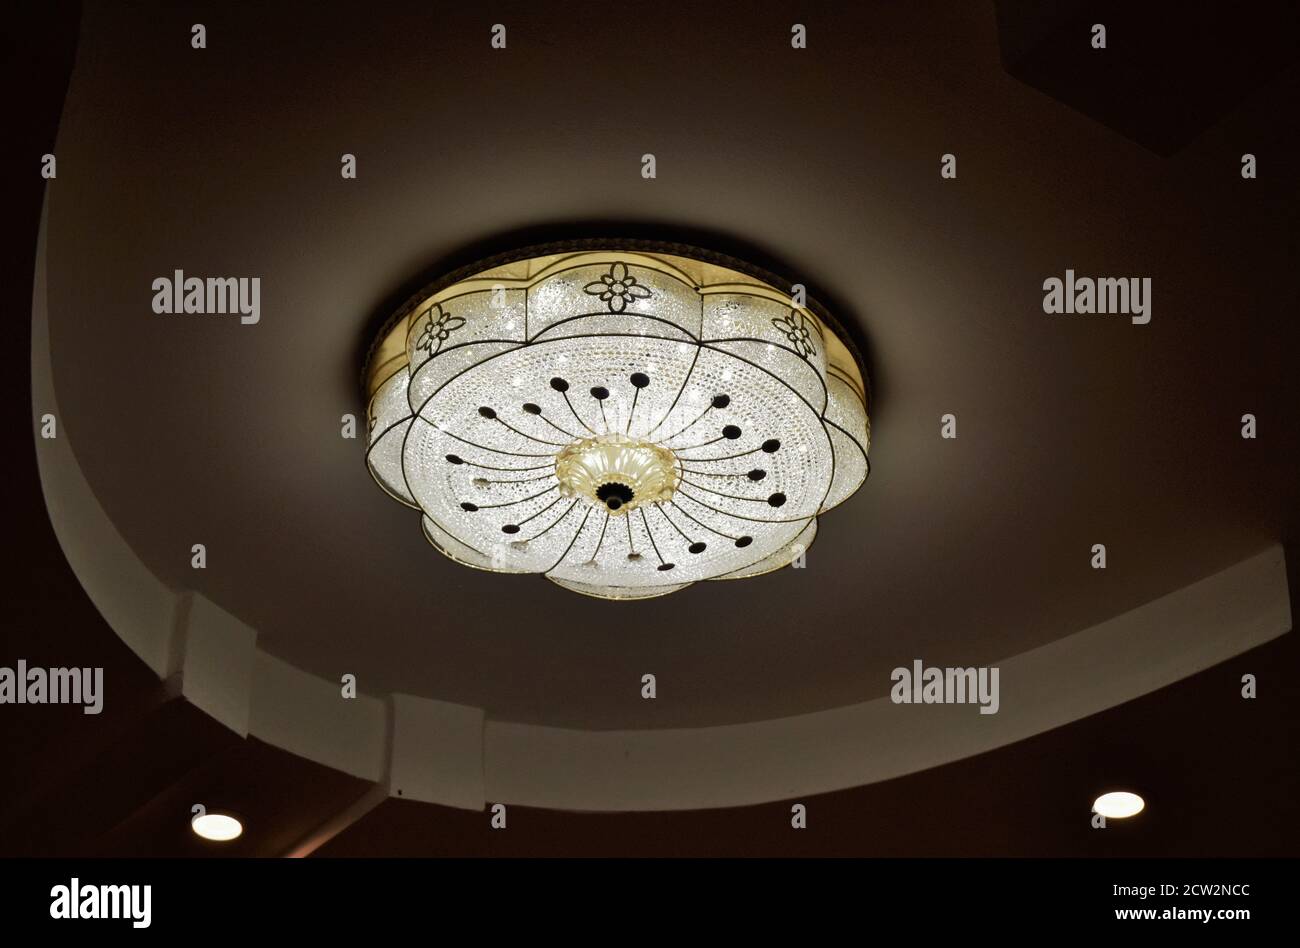 Runde Hängelampe mit Lampen/Leuchten. Moderne Innenansicht. Abstrakte Architektur in hellen Grau-/Weißtönen. Stockfoto